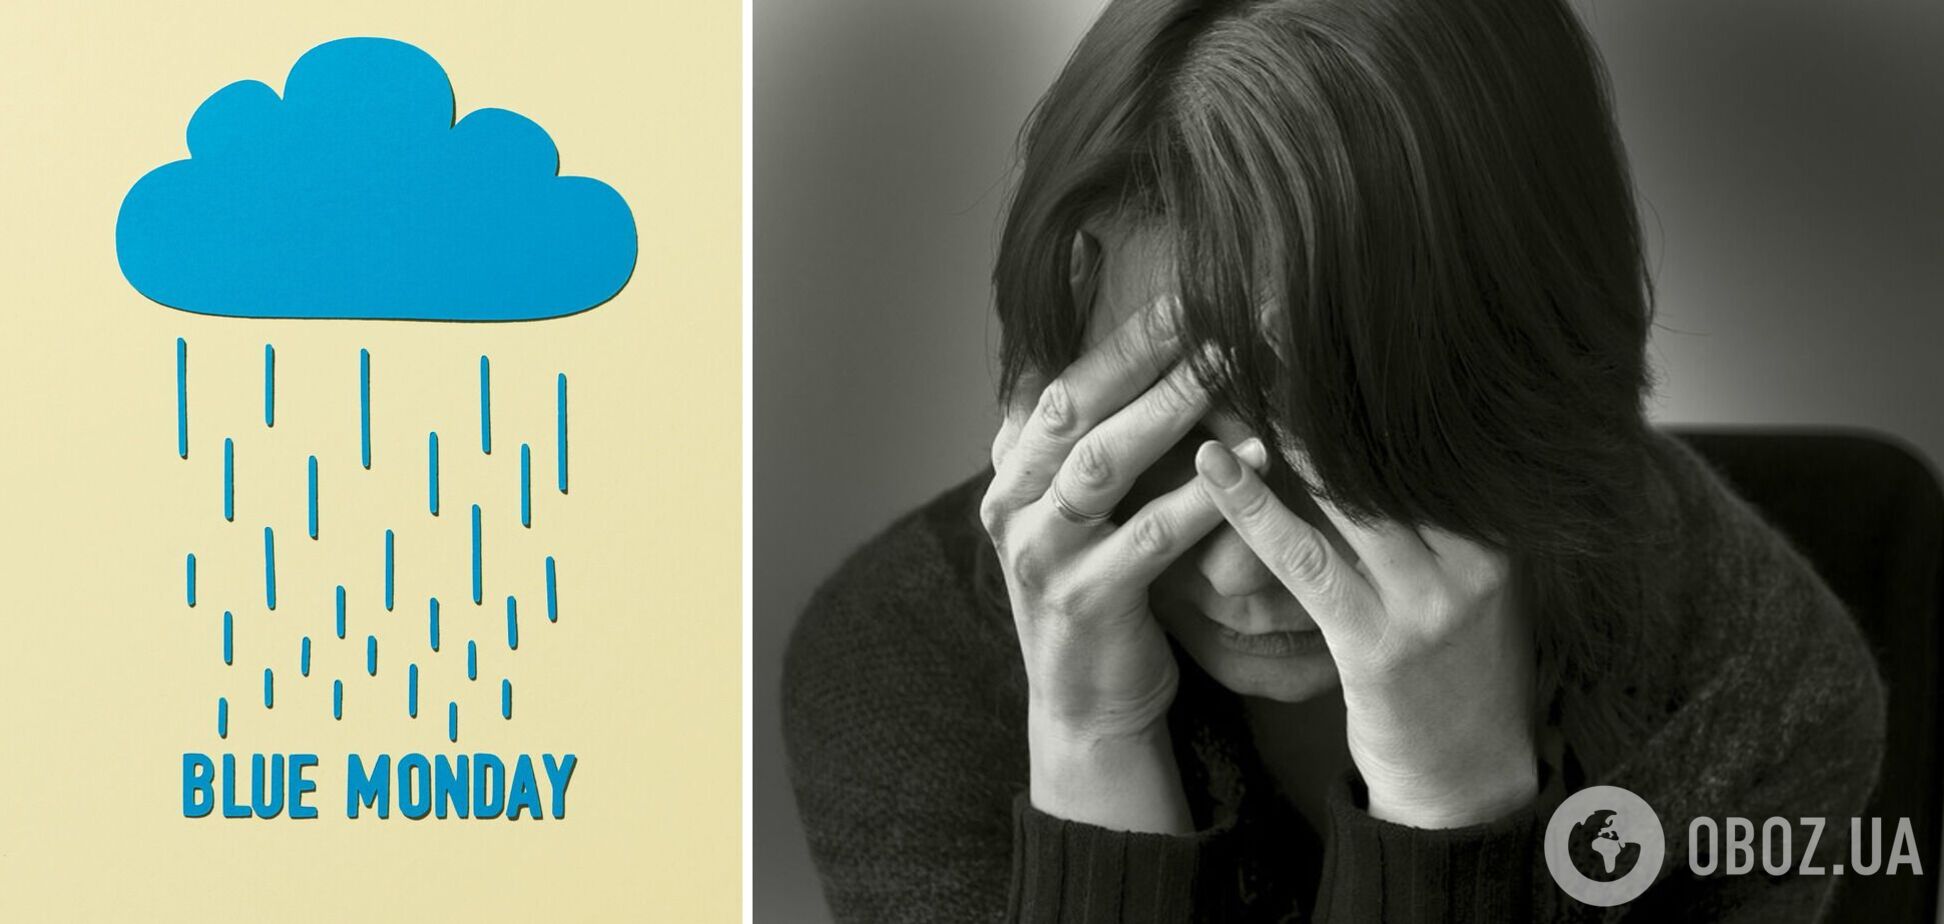 Синий понедельник: почему этот день называют самым депрессивным в году, а ученые говорят о 'маркетинговом трюке'